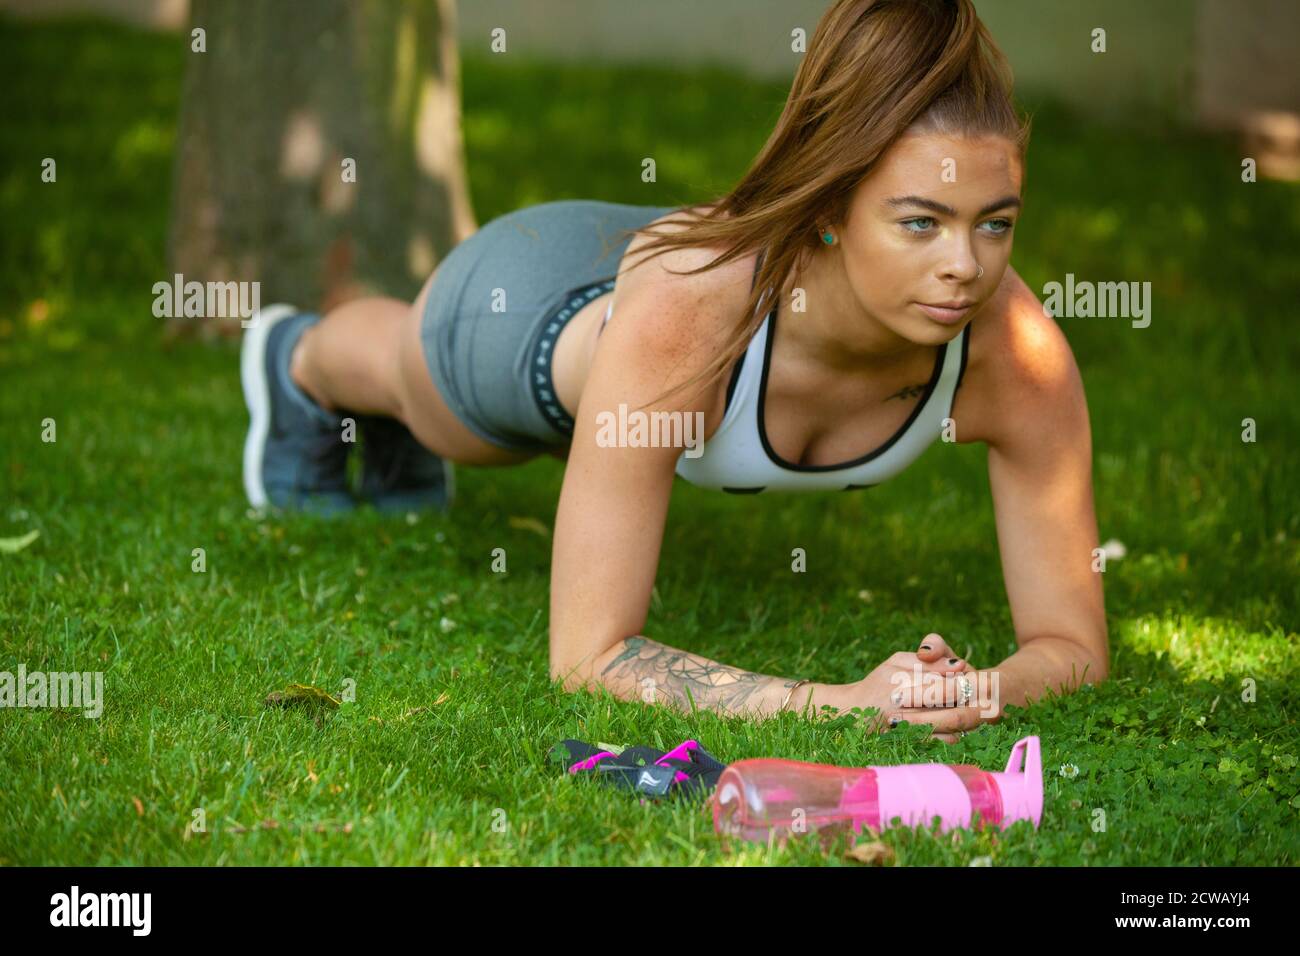 Eine Frau, die Sportkleidung trägt und die Plank-Position draußen auf Gras ausführt. Stockfoto